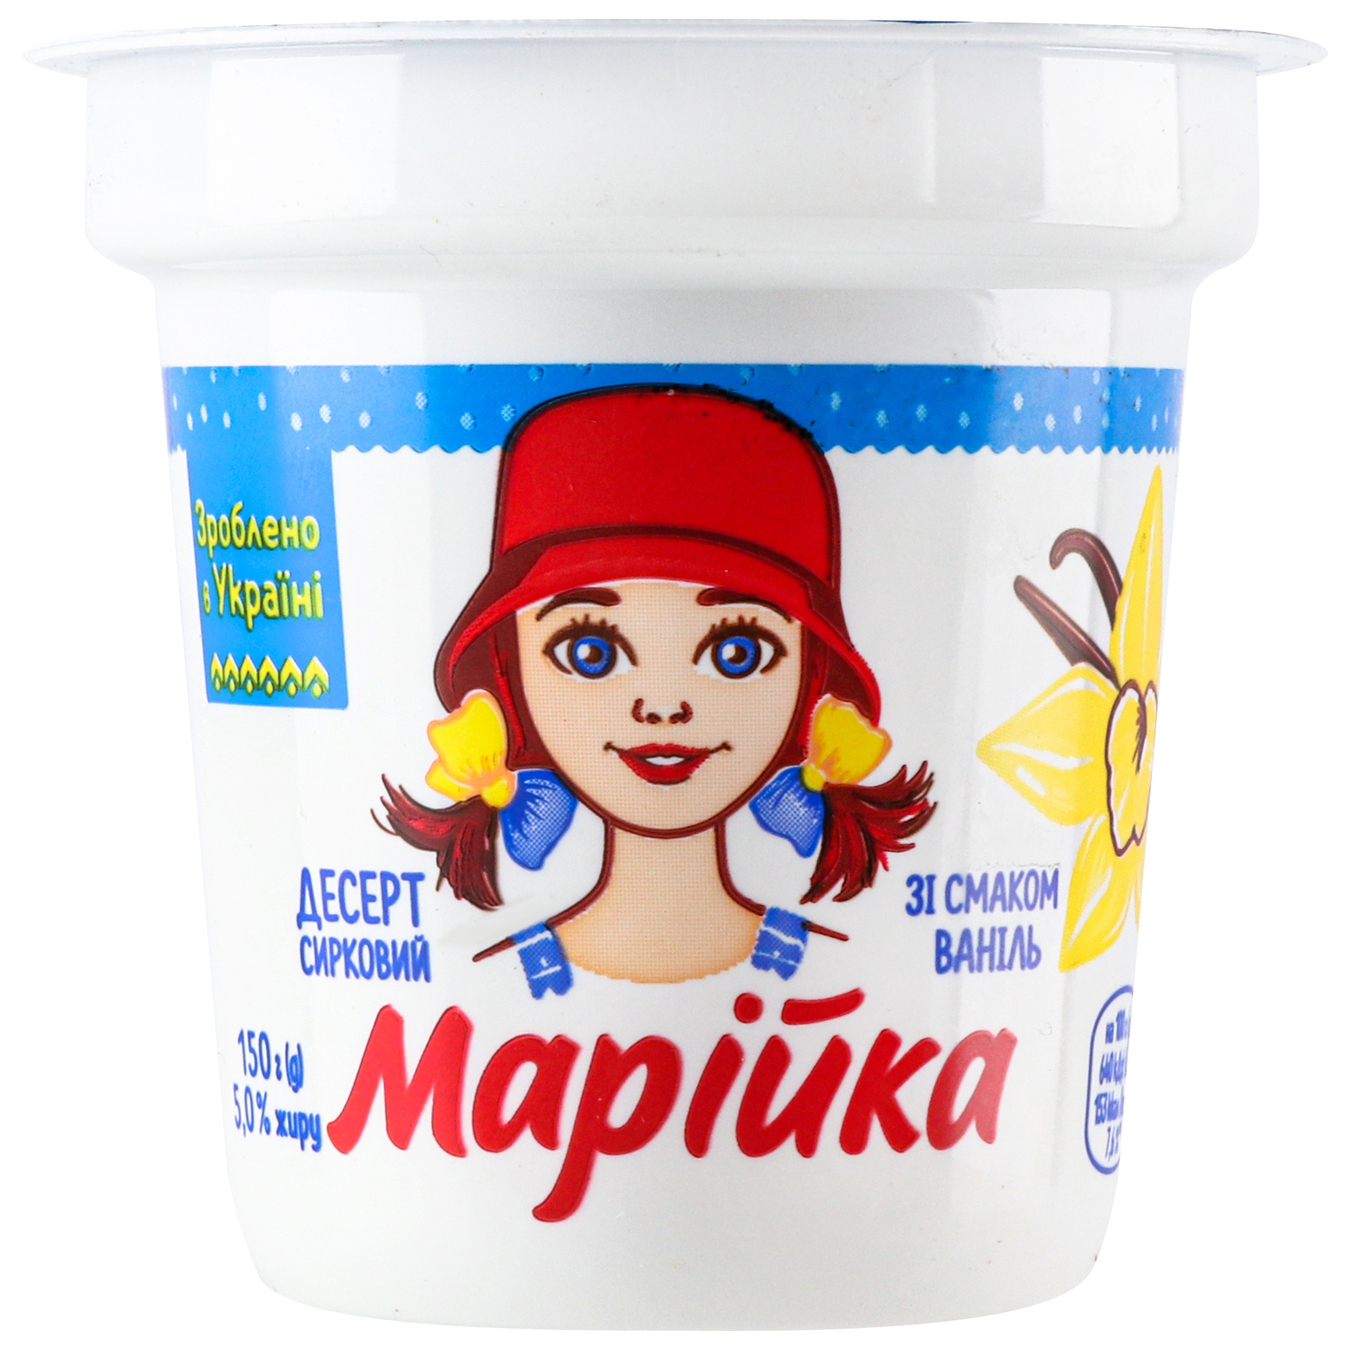 Mariyka Cheese dessert with Vanilla flavor 0,05 150g